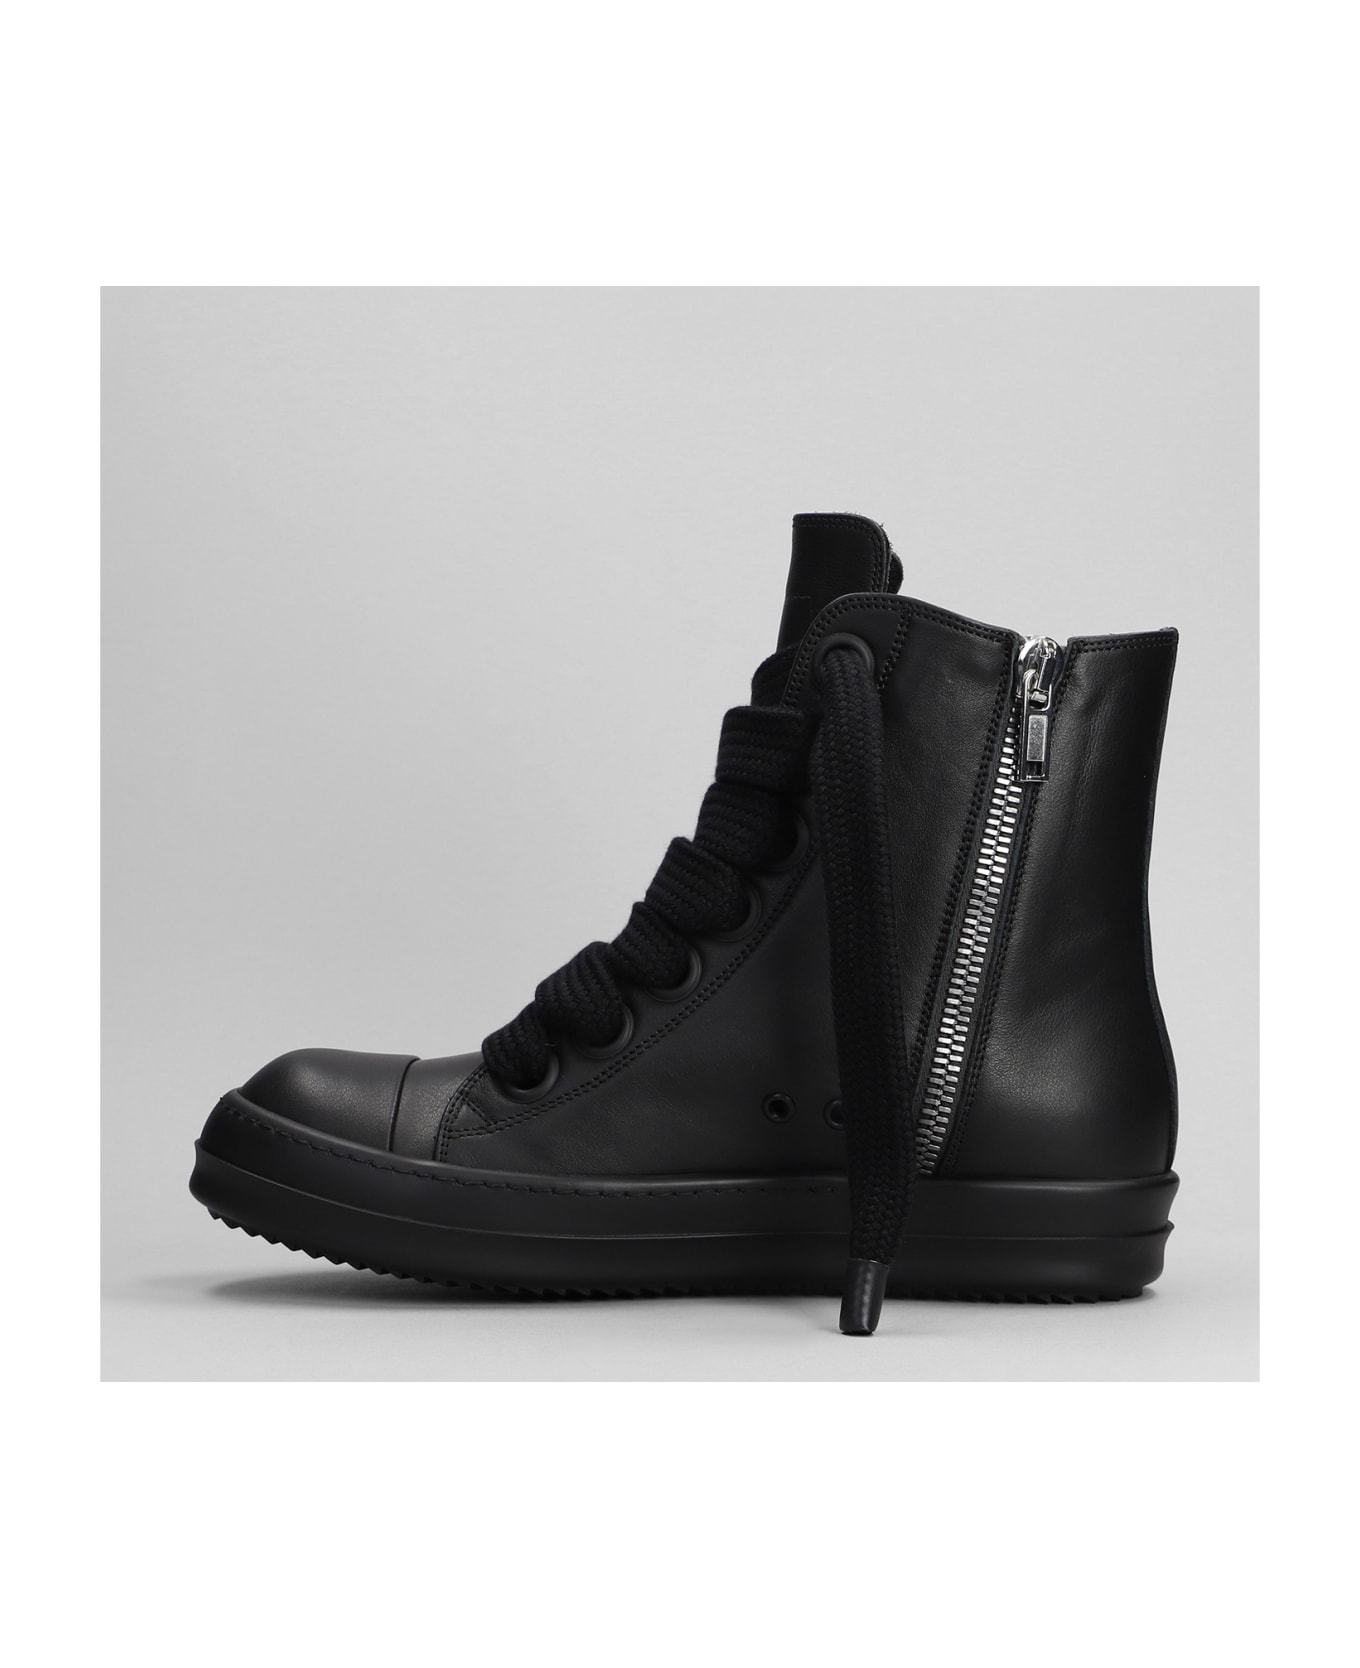 Rick Owens Sneaker Sneakers In Black Leather - Black